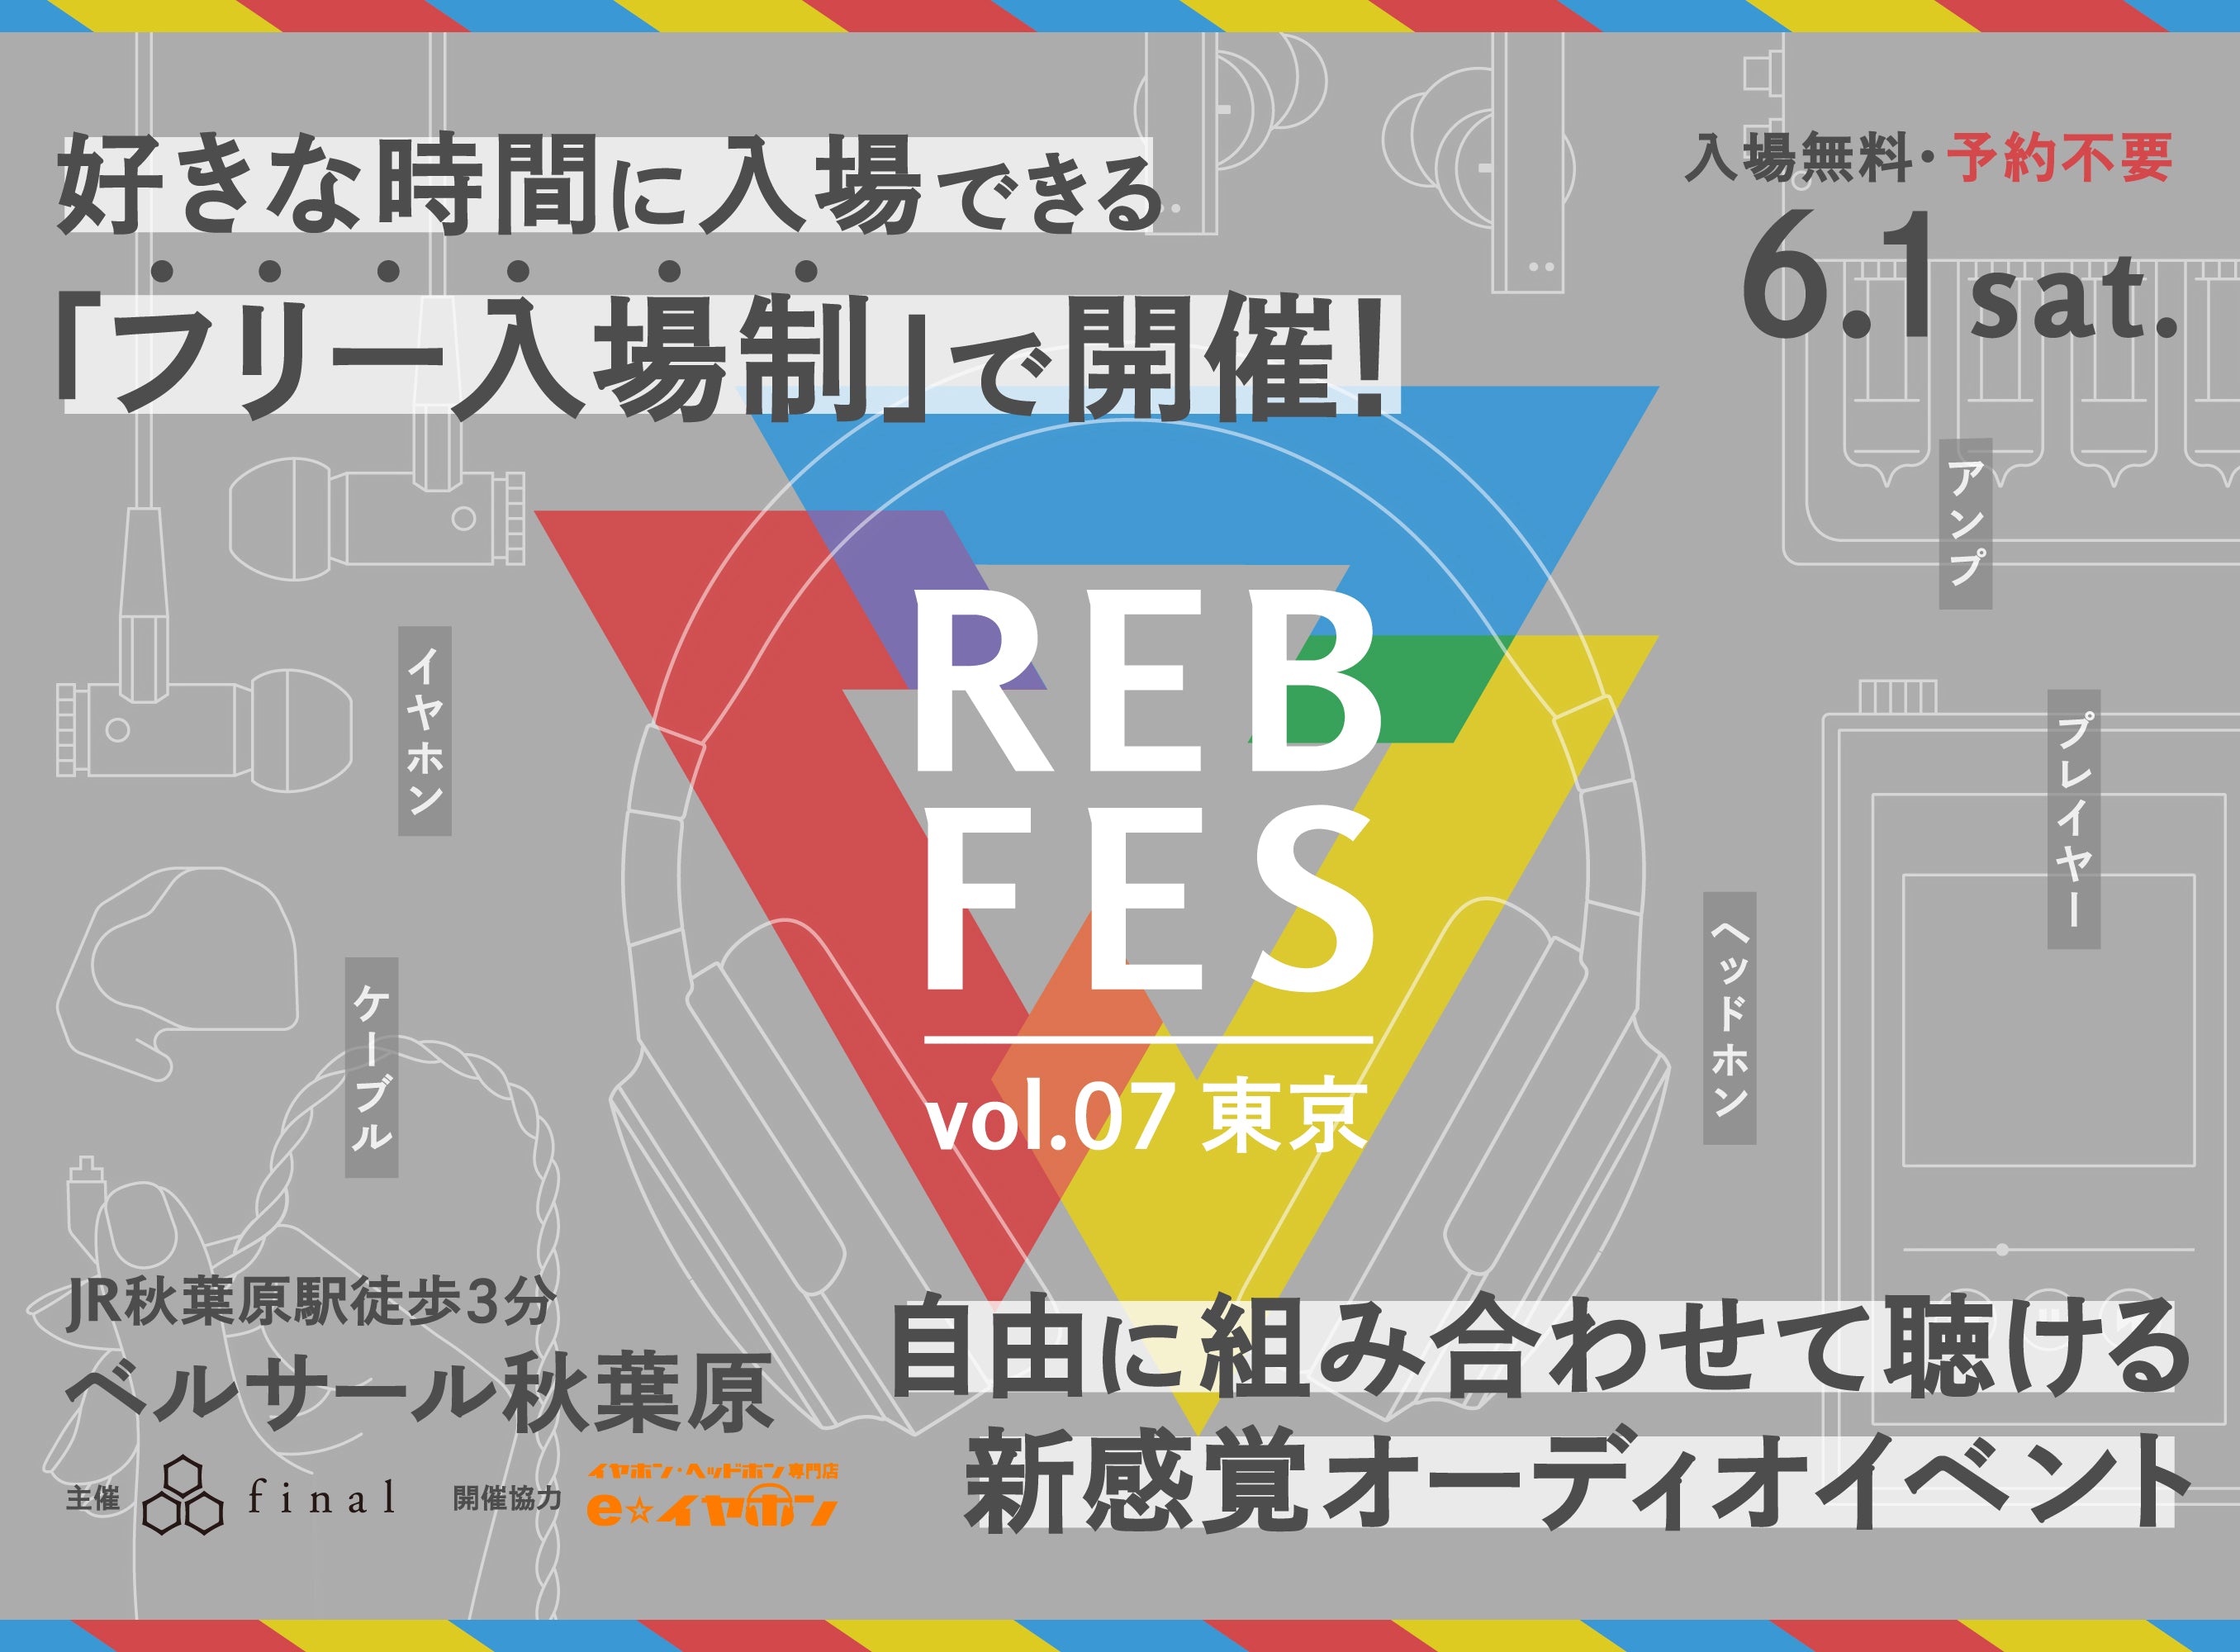 自由に組み合わせて聴ける新感覚オーディオイベント「REB fes vol.07@東京」を「フリー入場制」に変更いたします